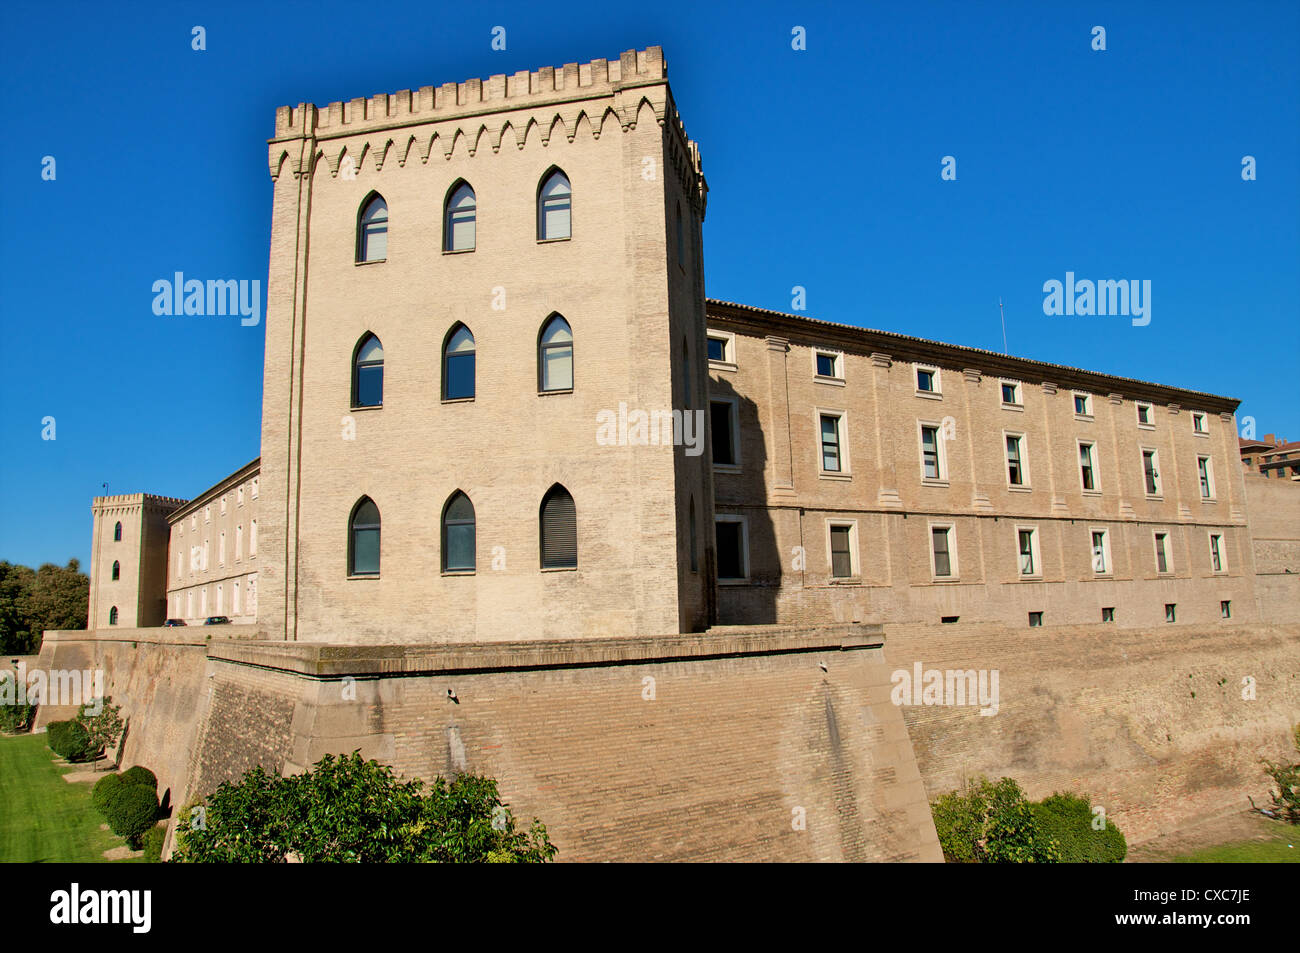 Remparts et tours de la Aljaferia palace datant du 11ème siècle, Saragosse (Zaragoza), Aragon, Espagne, Europe Banque D'Images